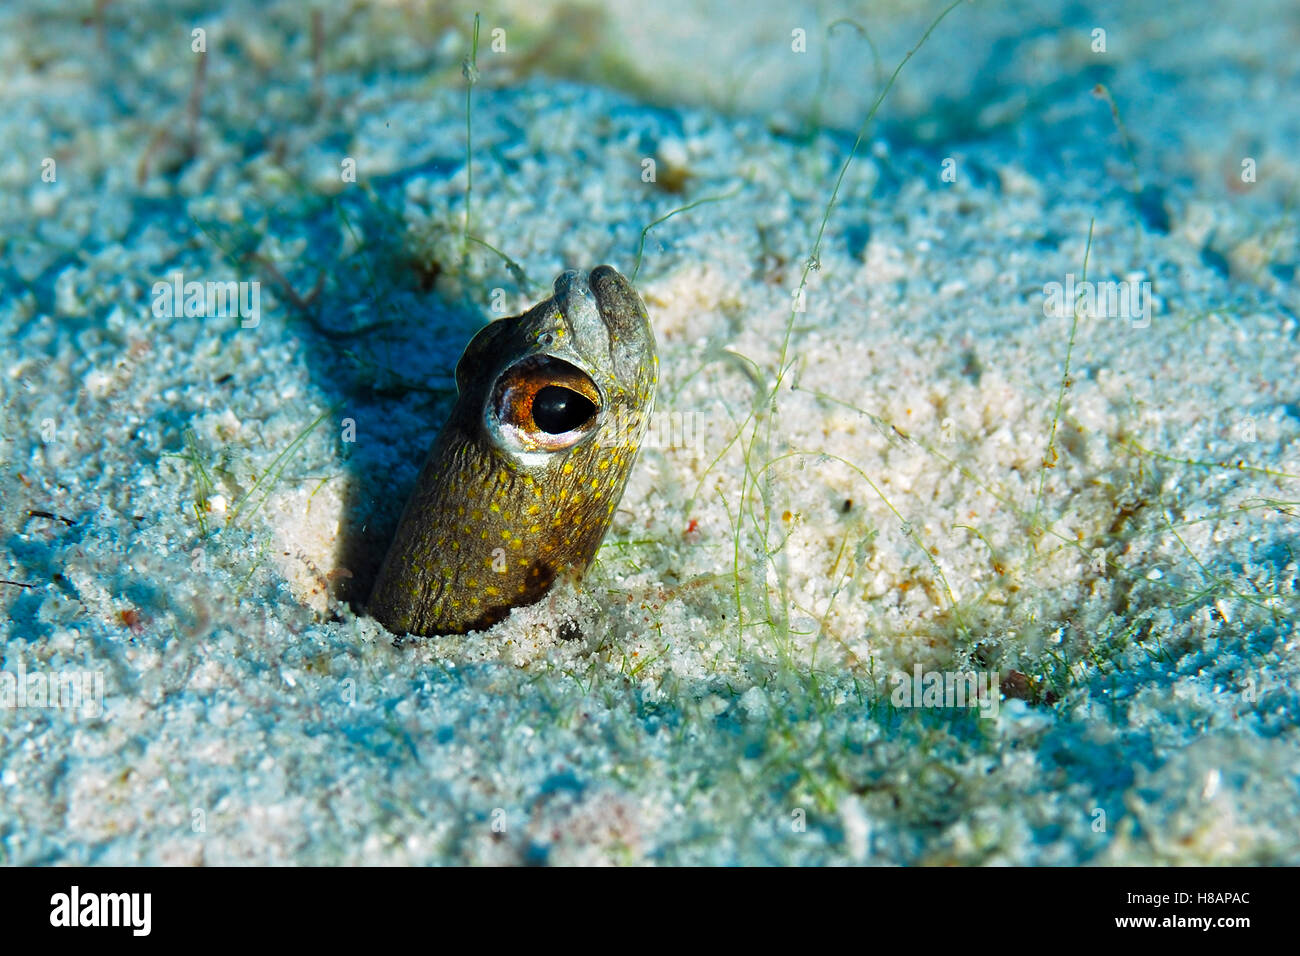 Spotted Garden Eel (Heteroconger hassi) emerging from burrow, Bonaire, Netherlands Antilles, Caribbean Stock Photo